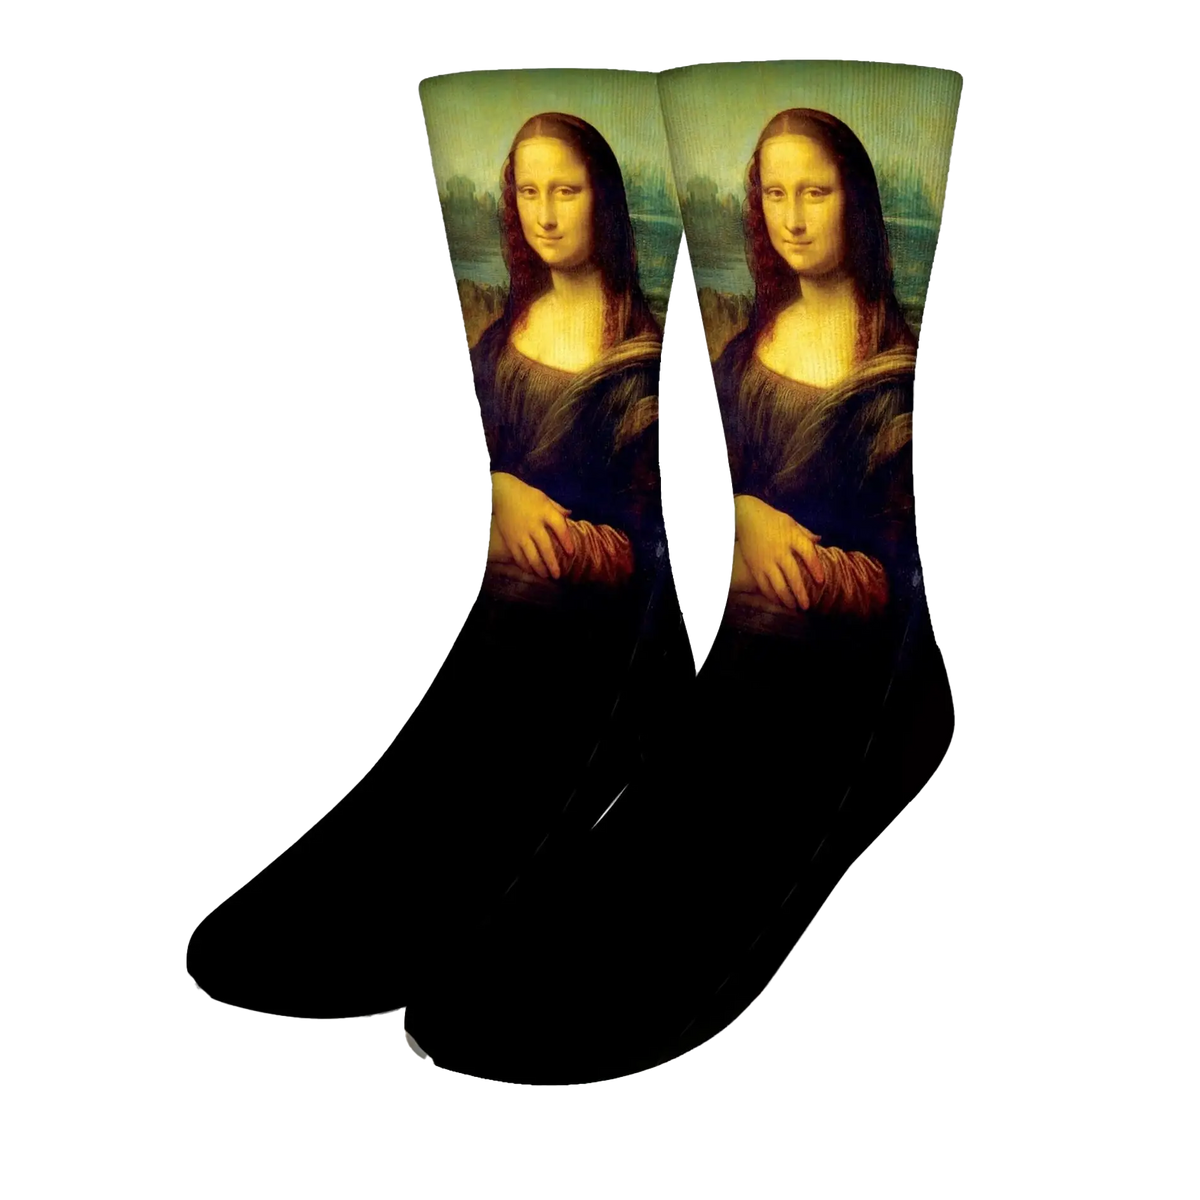 Mona Lisa Art Socks - Men